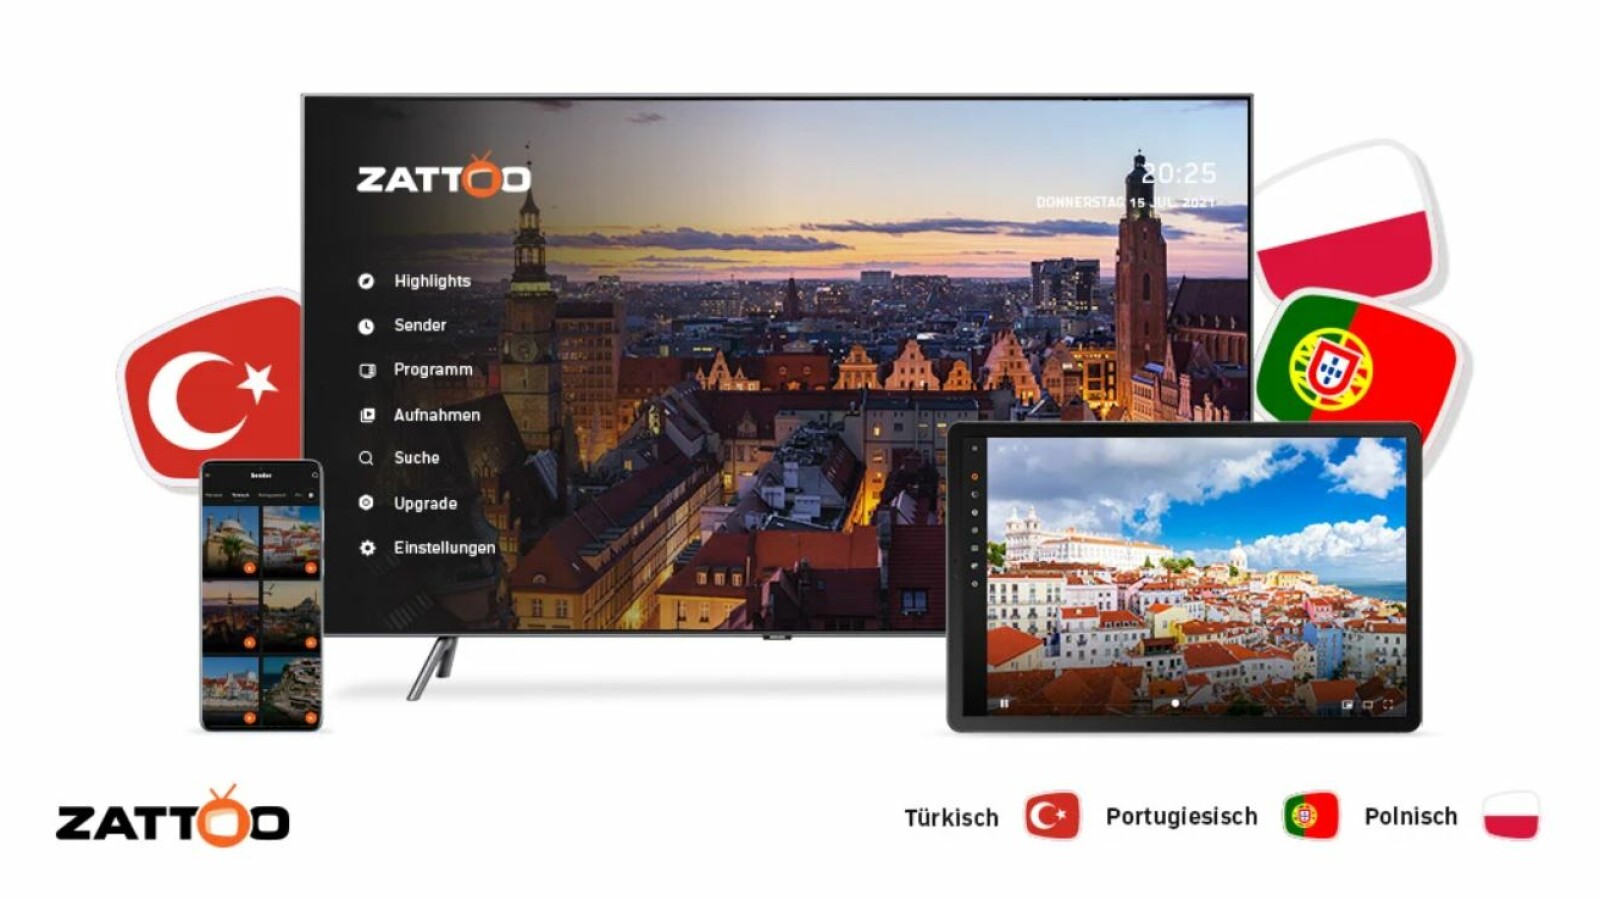 Zattoo: Odbieraj kanały międzynarodowe – w ten sposób oglądasz kanały tureckie, polskie i rosyjskie